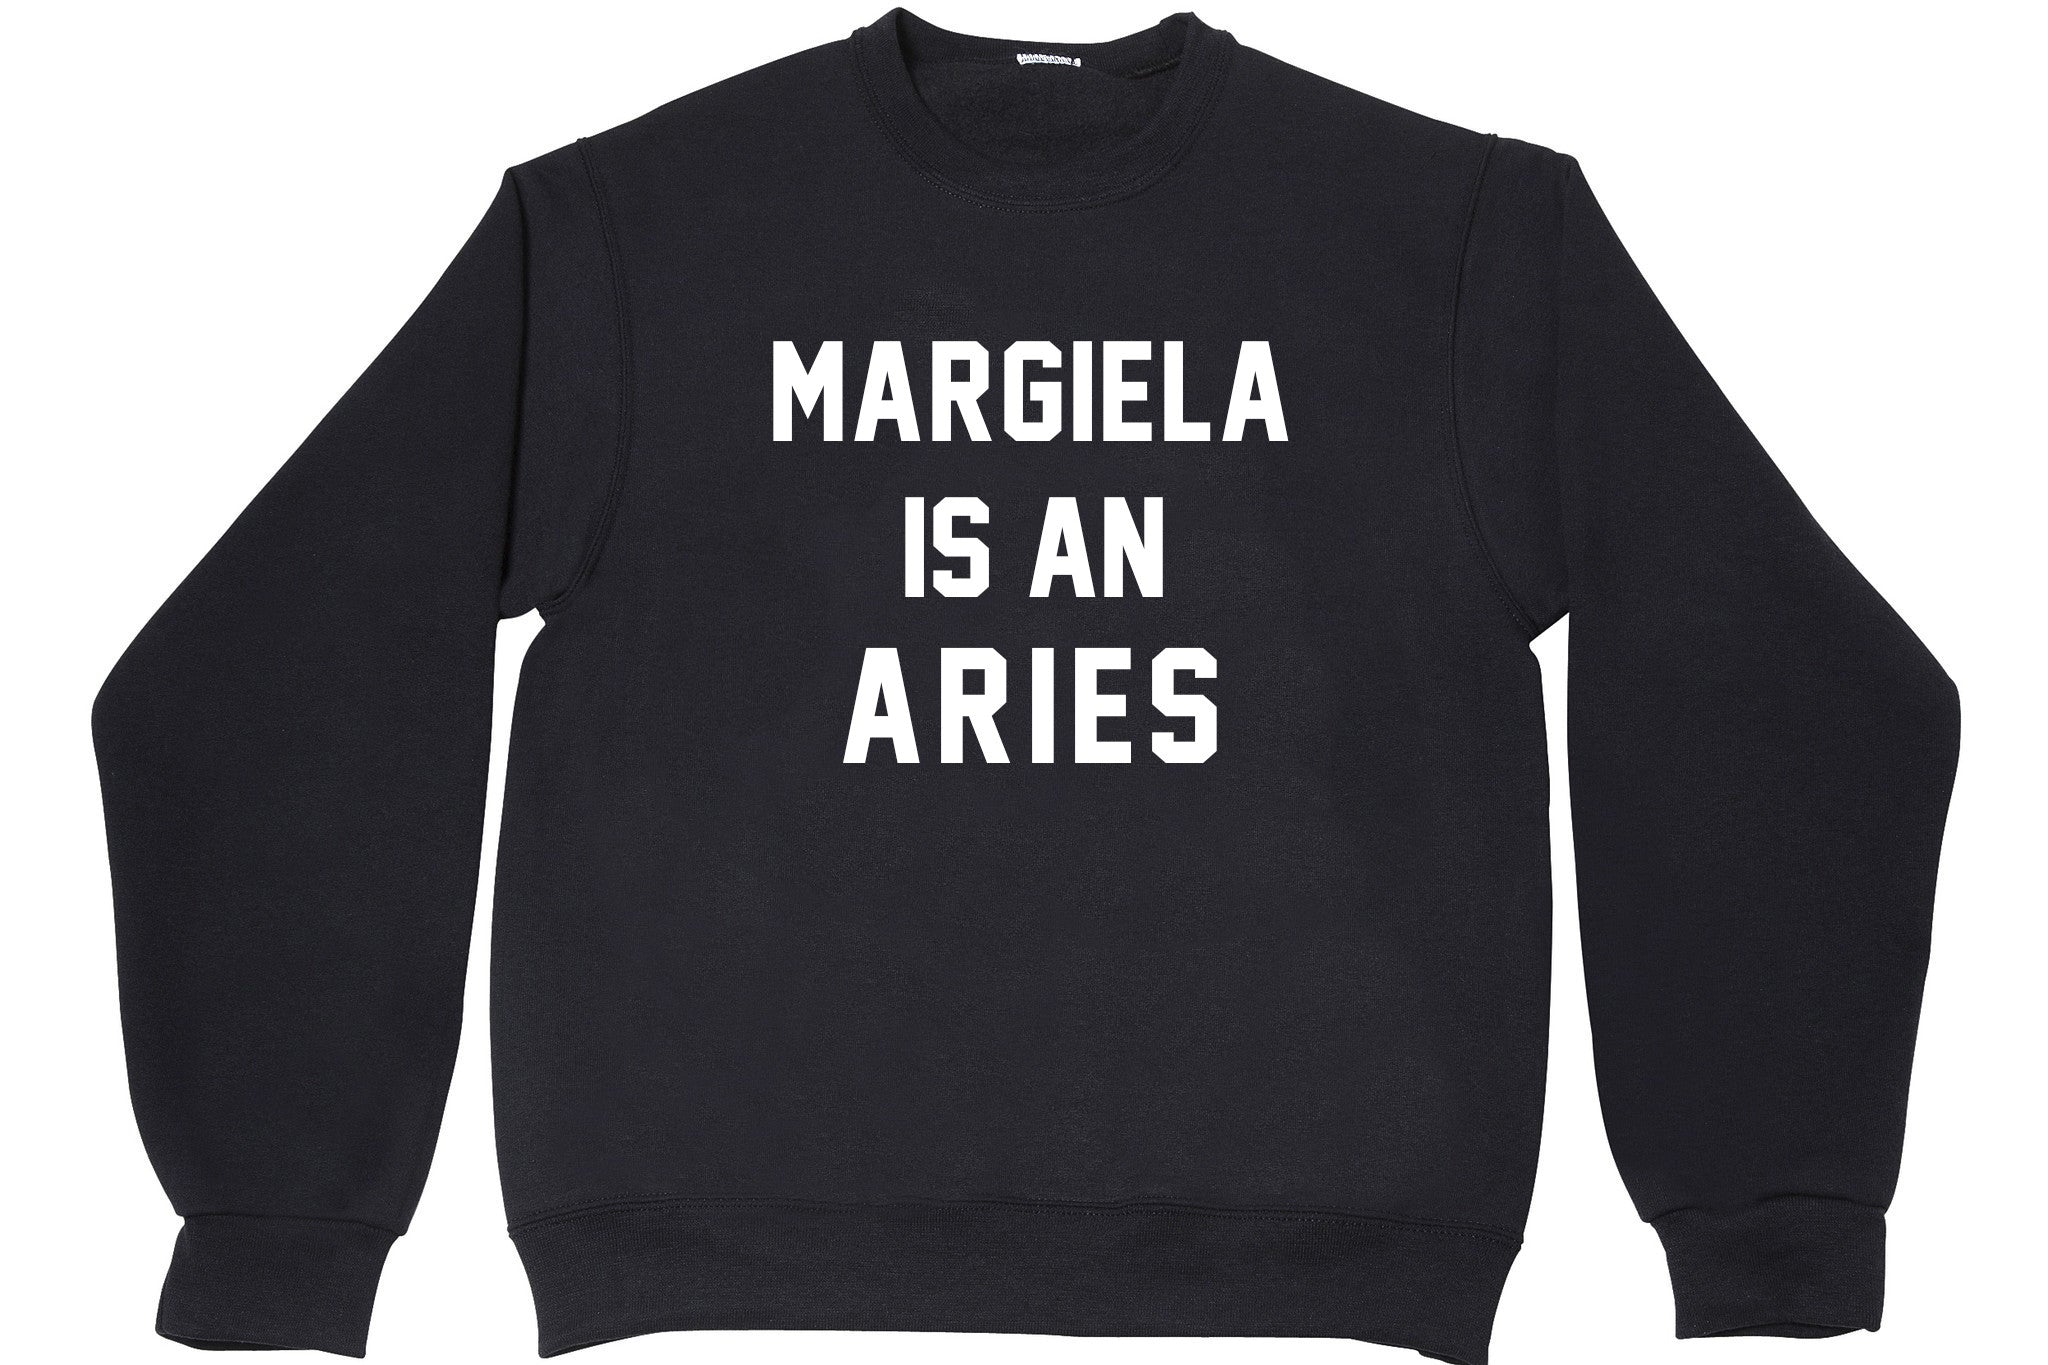 MARGIELA IS AN ARIES